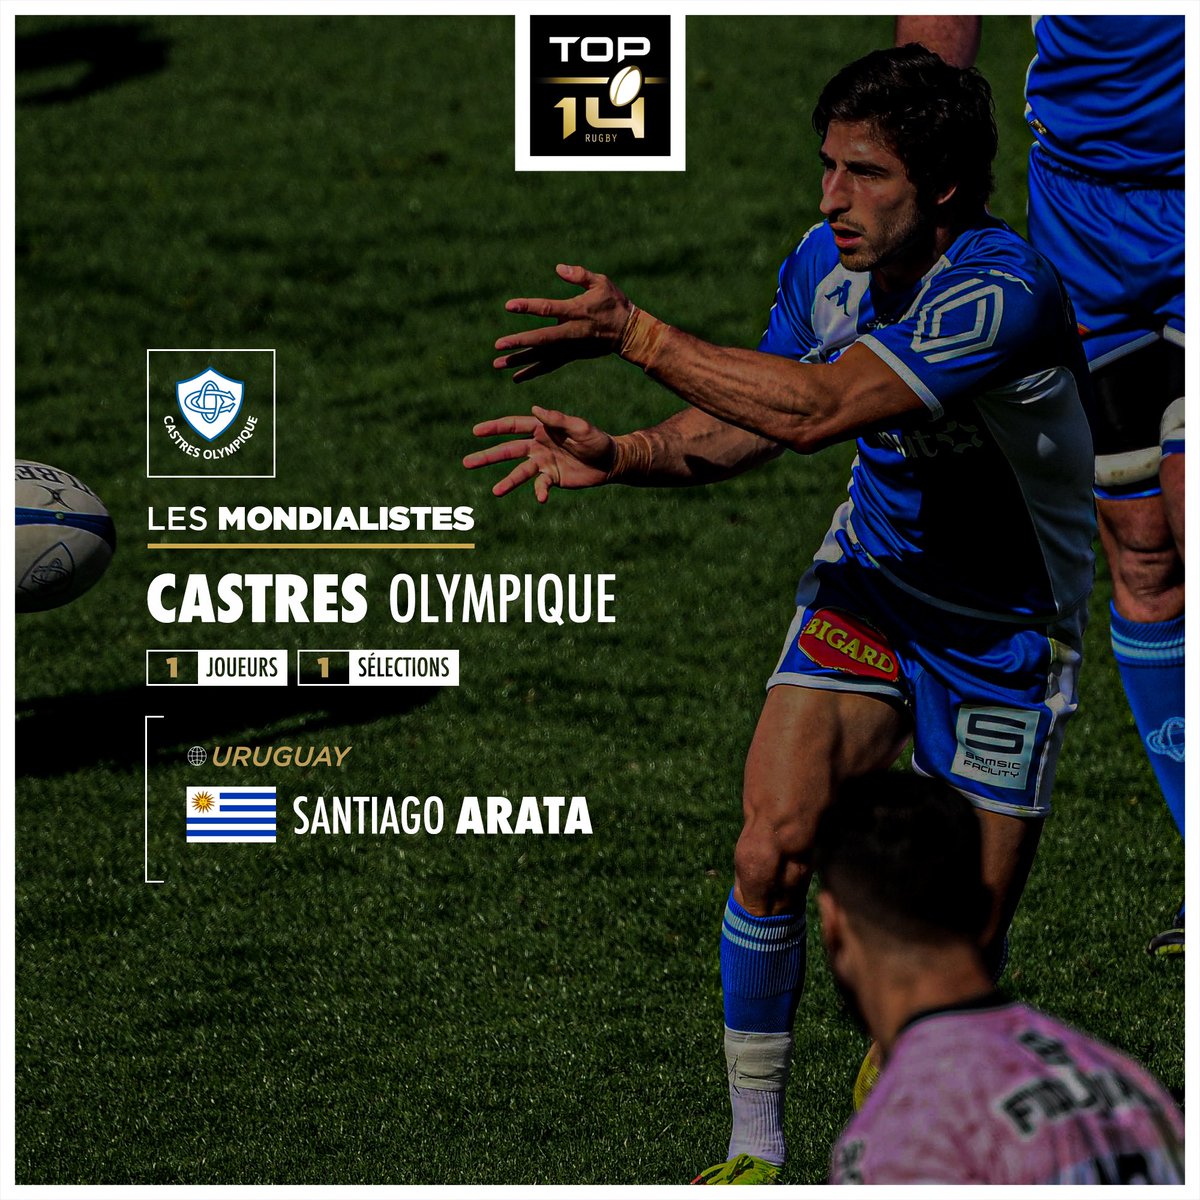 Découvre le mondialiste du @CastresRugby 🔥 Jusqu'où ira l'uruguayen ? 🇺🇾 #TOP14 #RugbyWorldCup